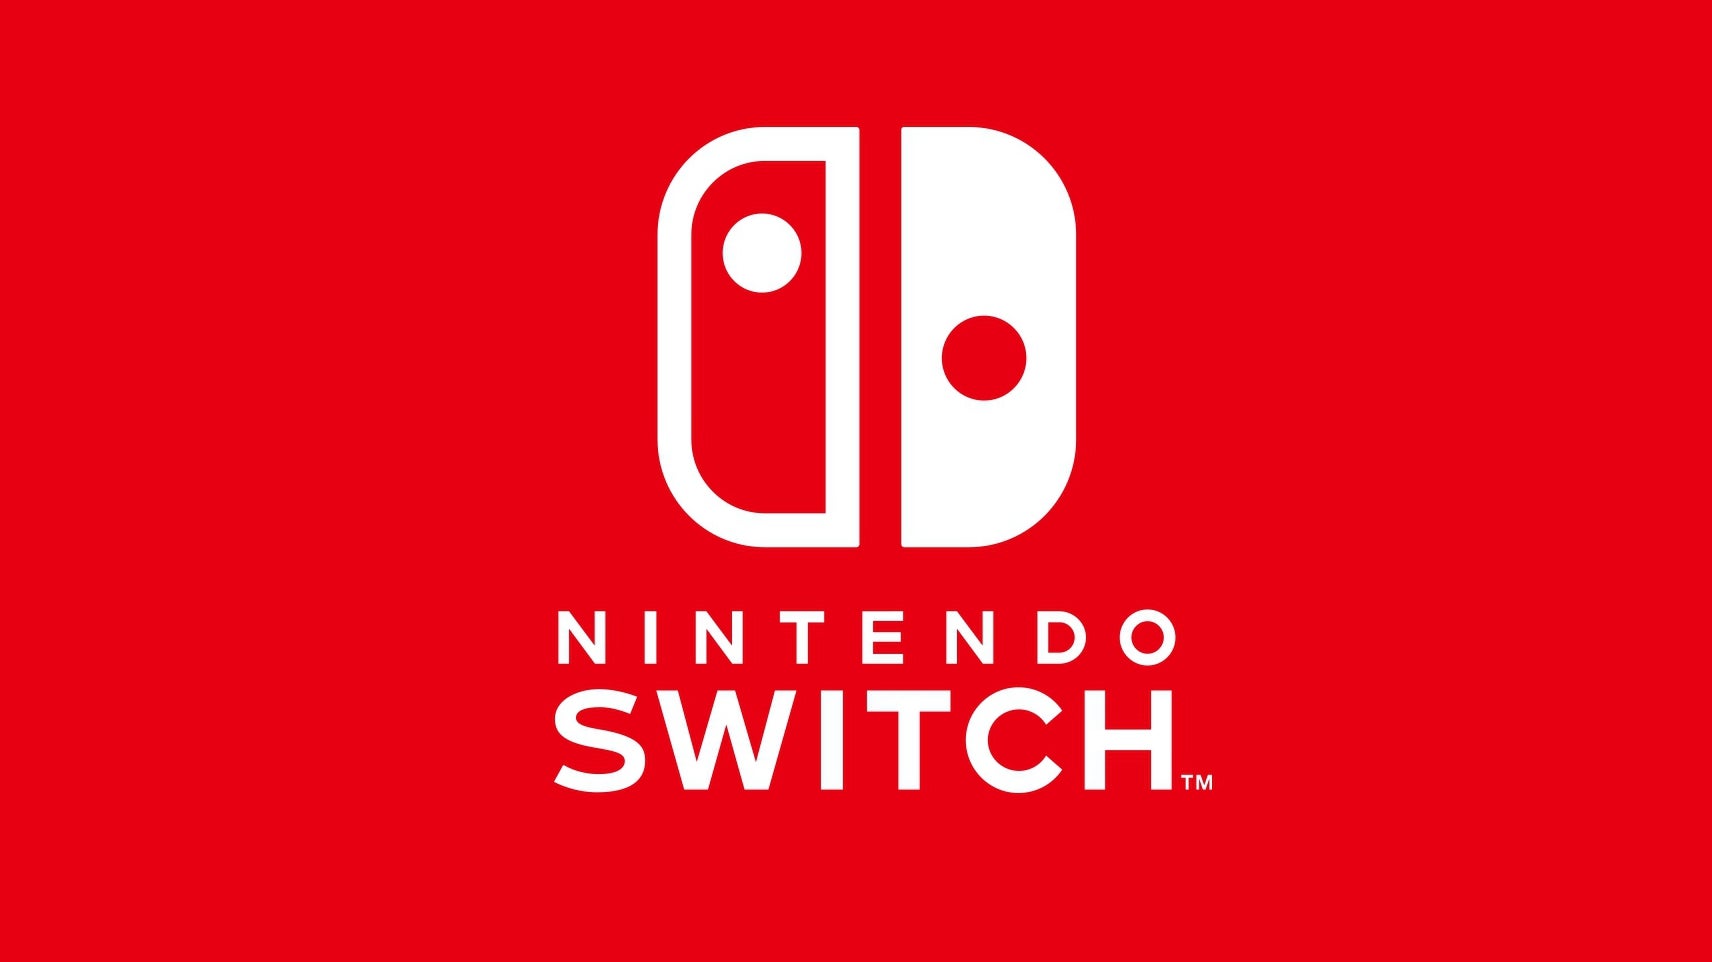 Afbeeldingen van E3 2018 - Alle Nintendo Switch games die we verwachten te zien